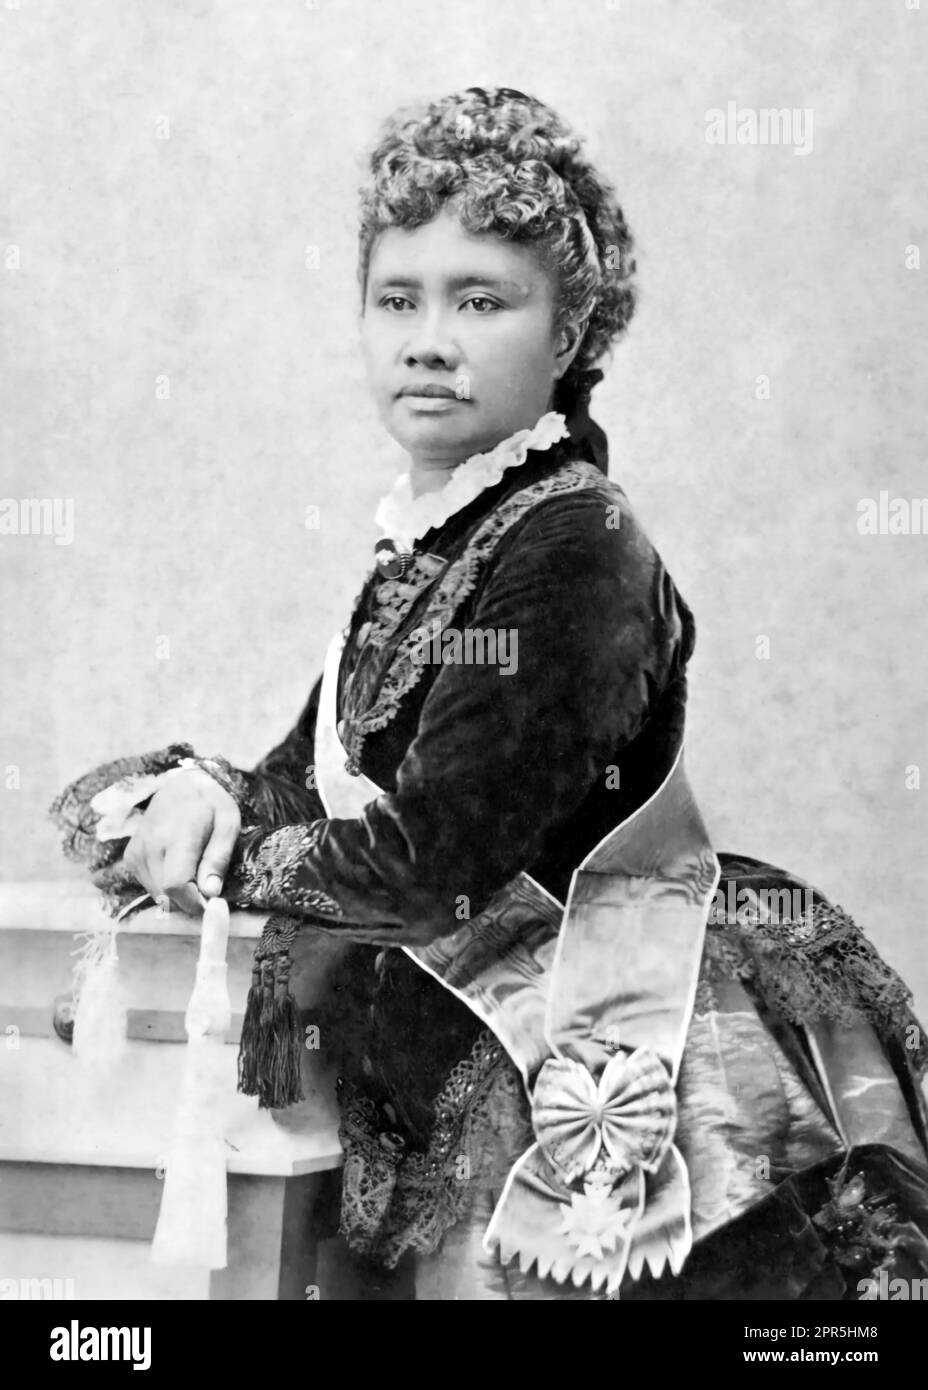 Liliuokalani. Portrait de la reine Liliʻuokalani d'Hawaï (1838-1917), le dernier monarque du royaume, vers 1891 Banque D'Images